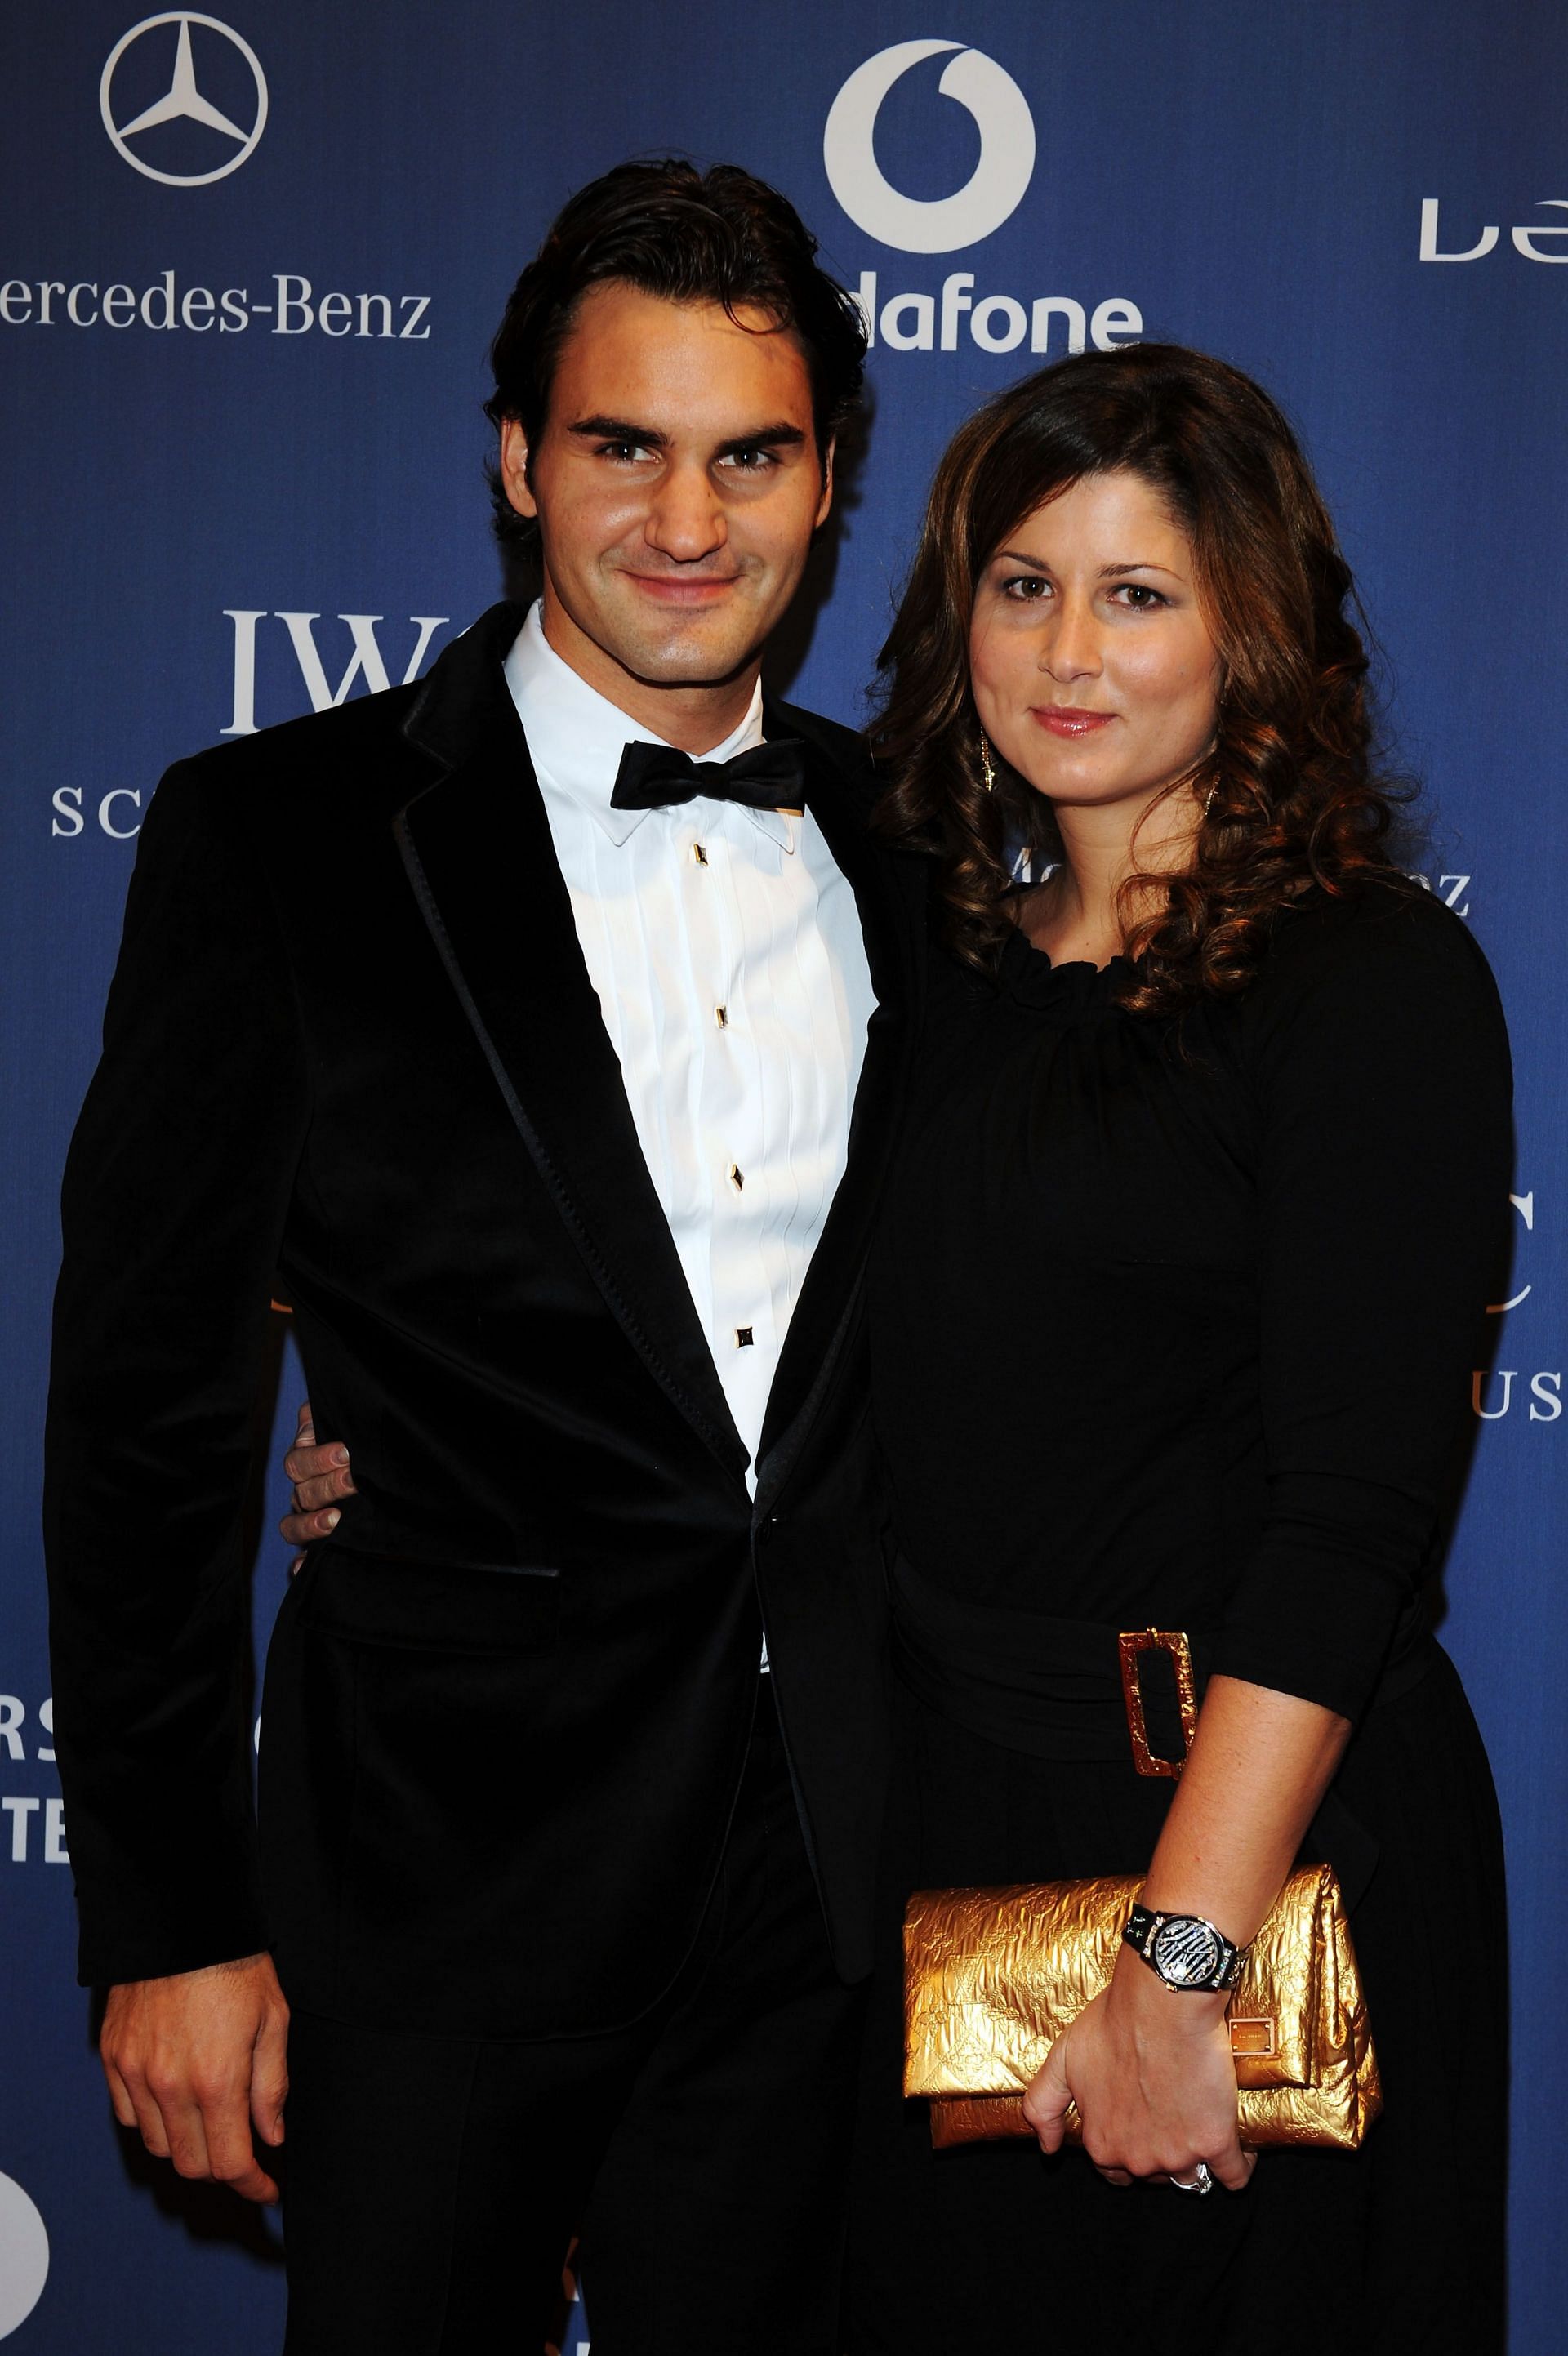 Roger Federer married Mirka Federer in 2009